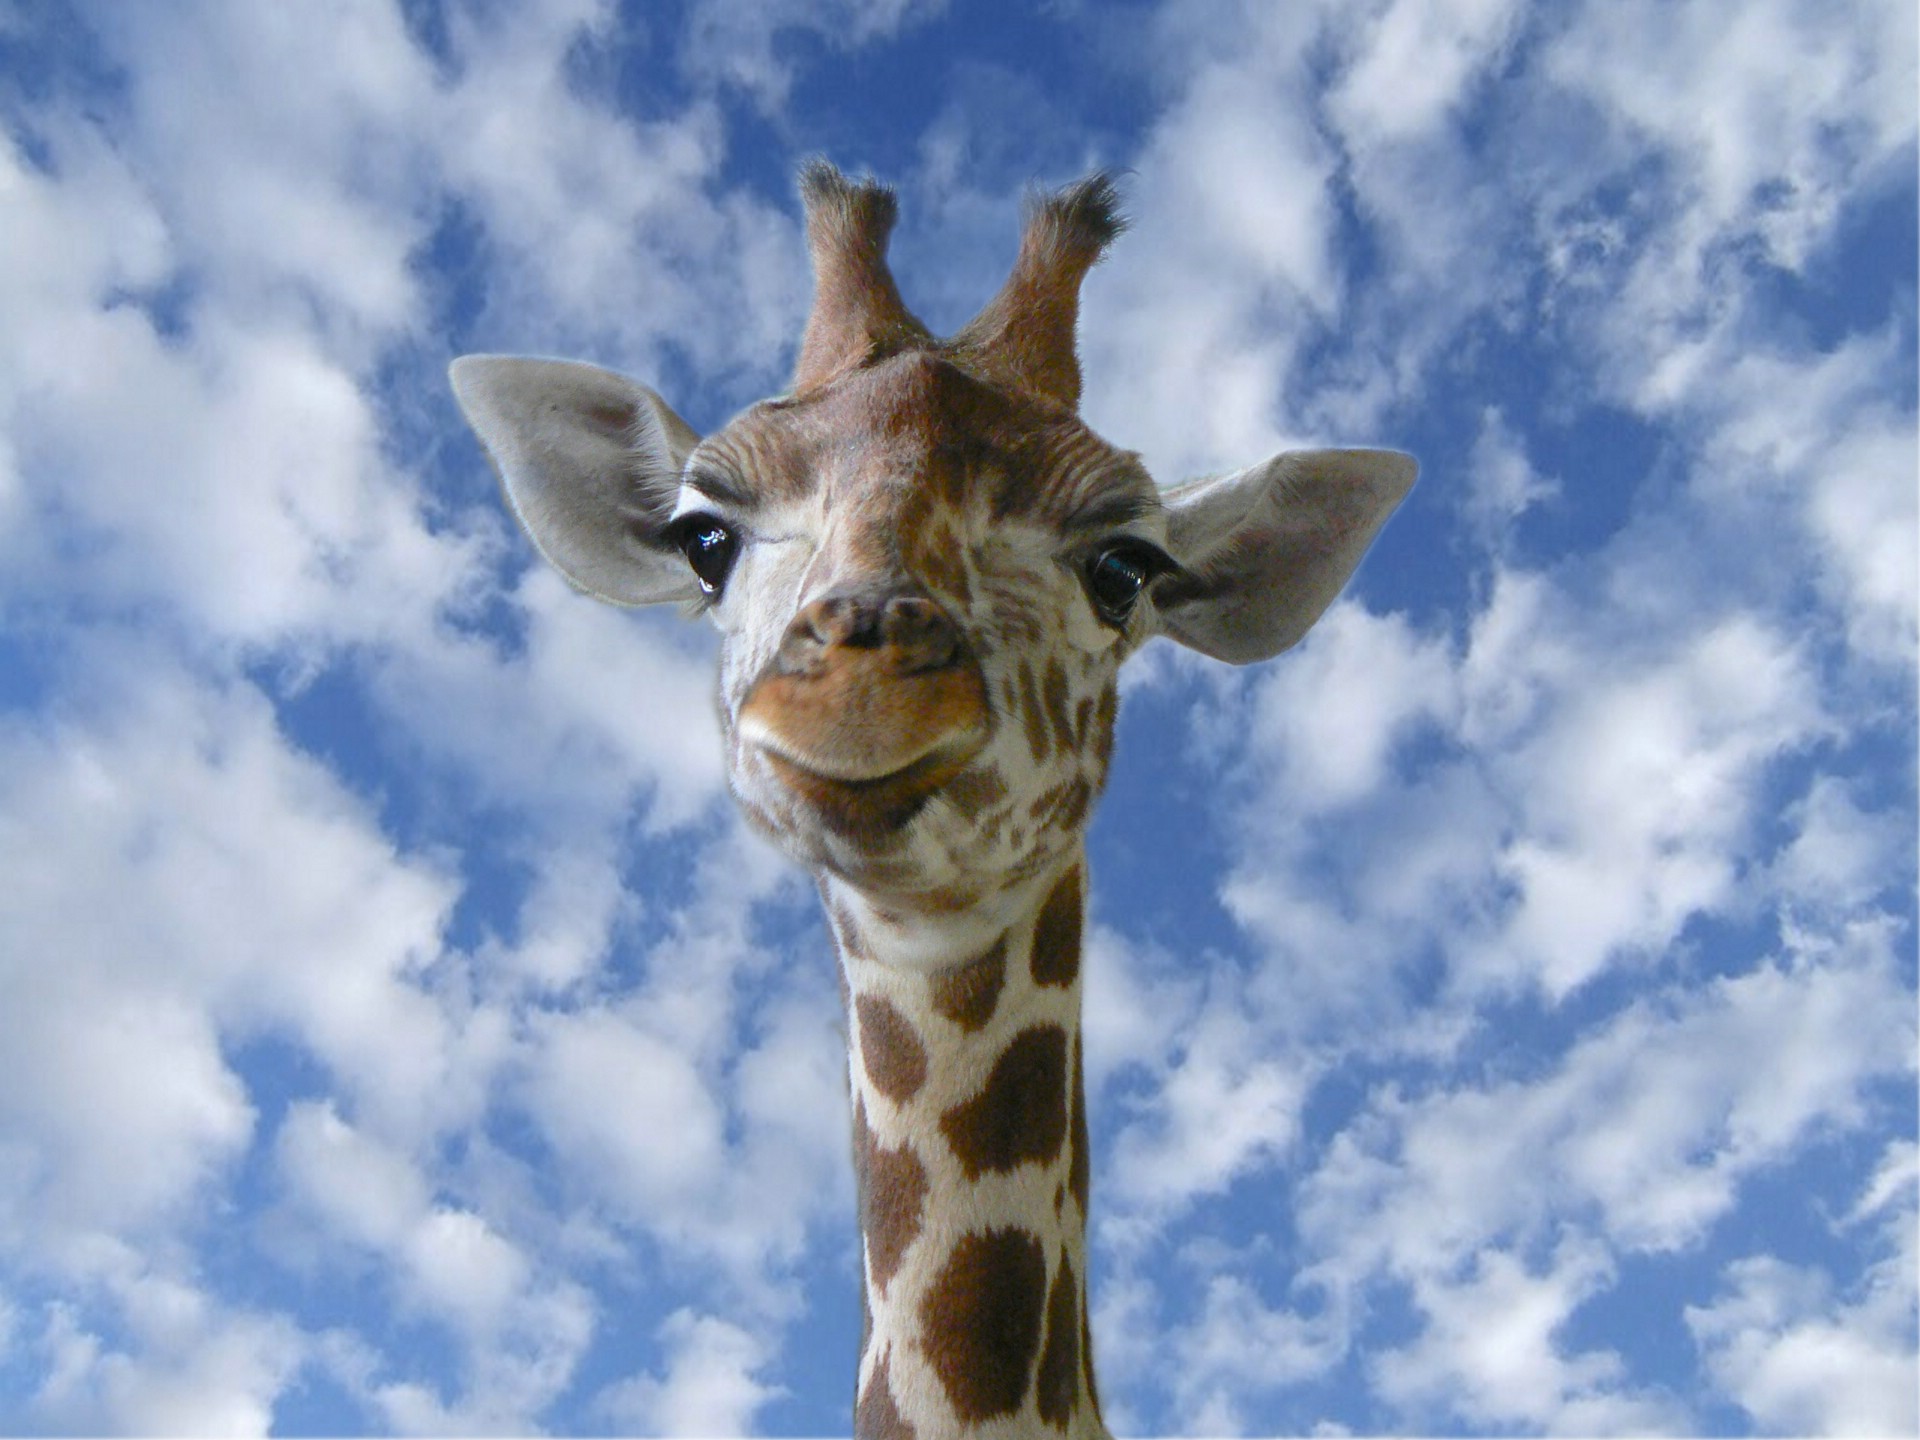 fond d'ecran 3d girafe